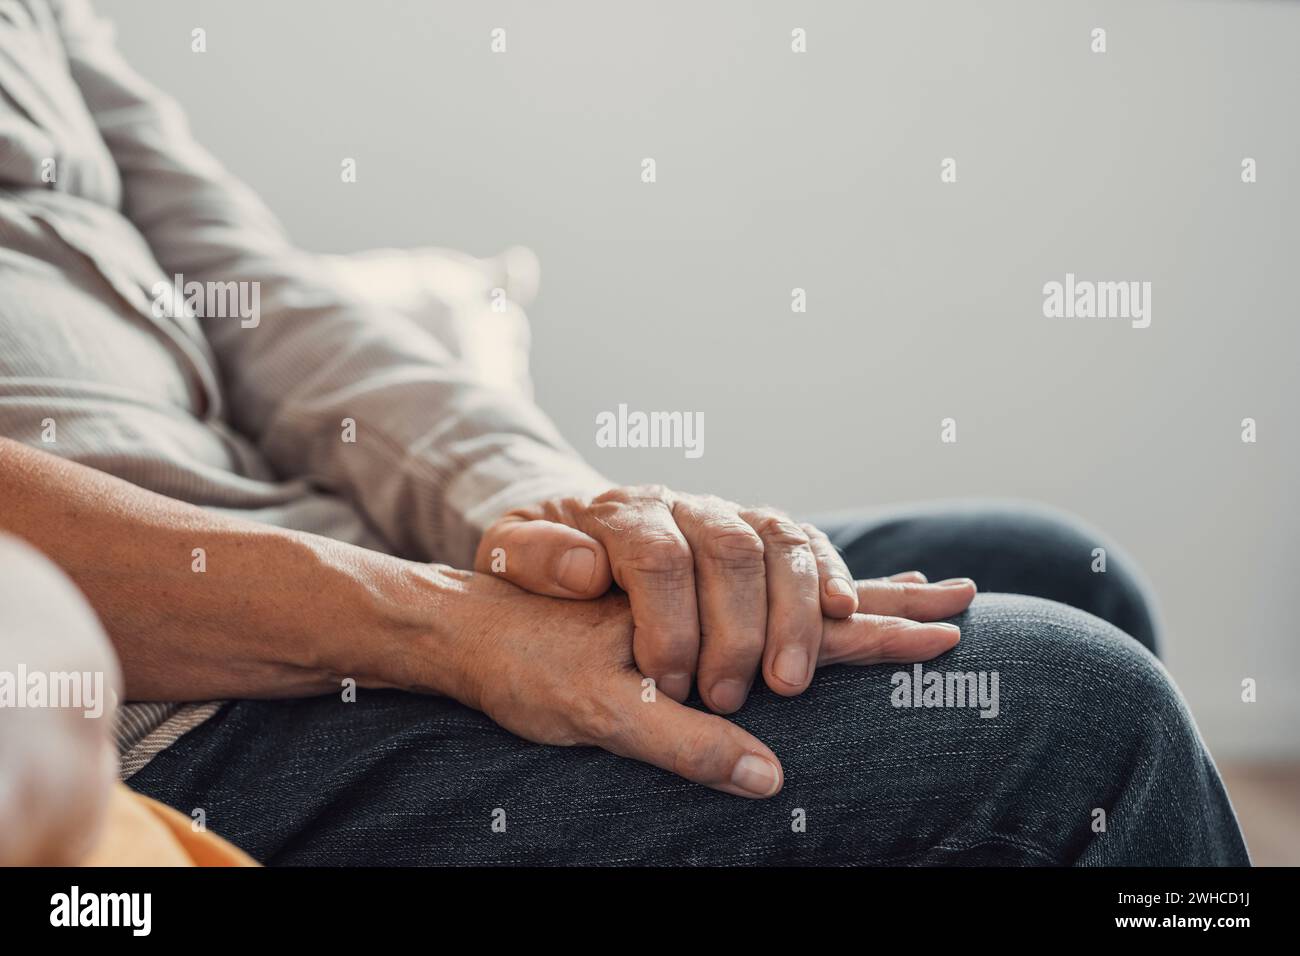 Nahaufnahme älterer, liebevoller Frau, die faltige Hände des reiferen Ehemanns bedeckt und zu Hause Liebe und Unterstützung zeigt. Fürsorgliche Familienpaare mittleren Alters, die aufrichtige, vertrauensvolle und ehrliche Gespräche genießen. Stockfoto